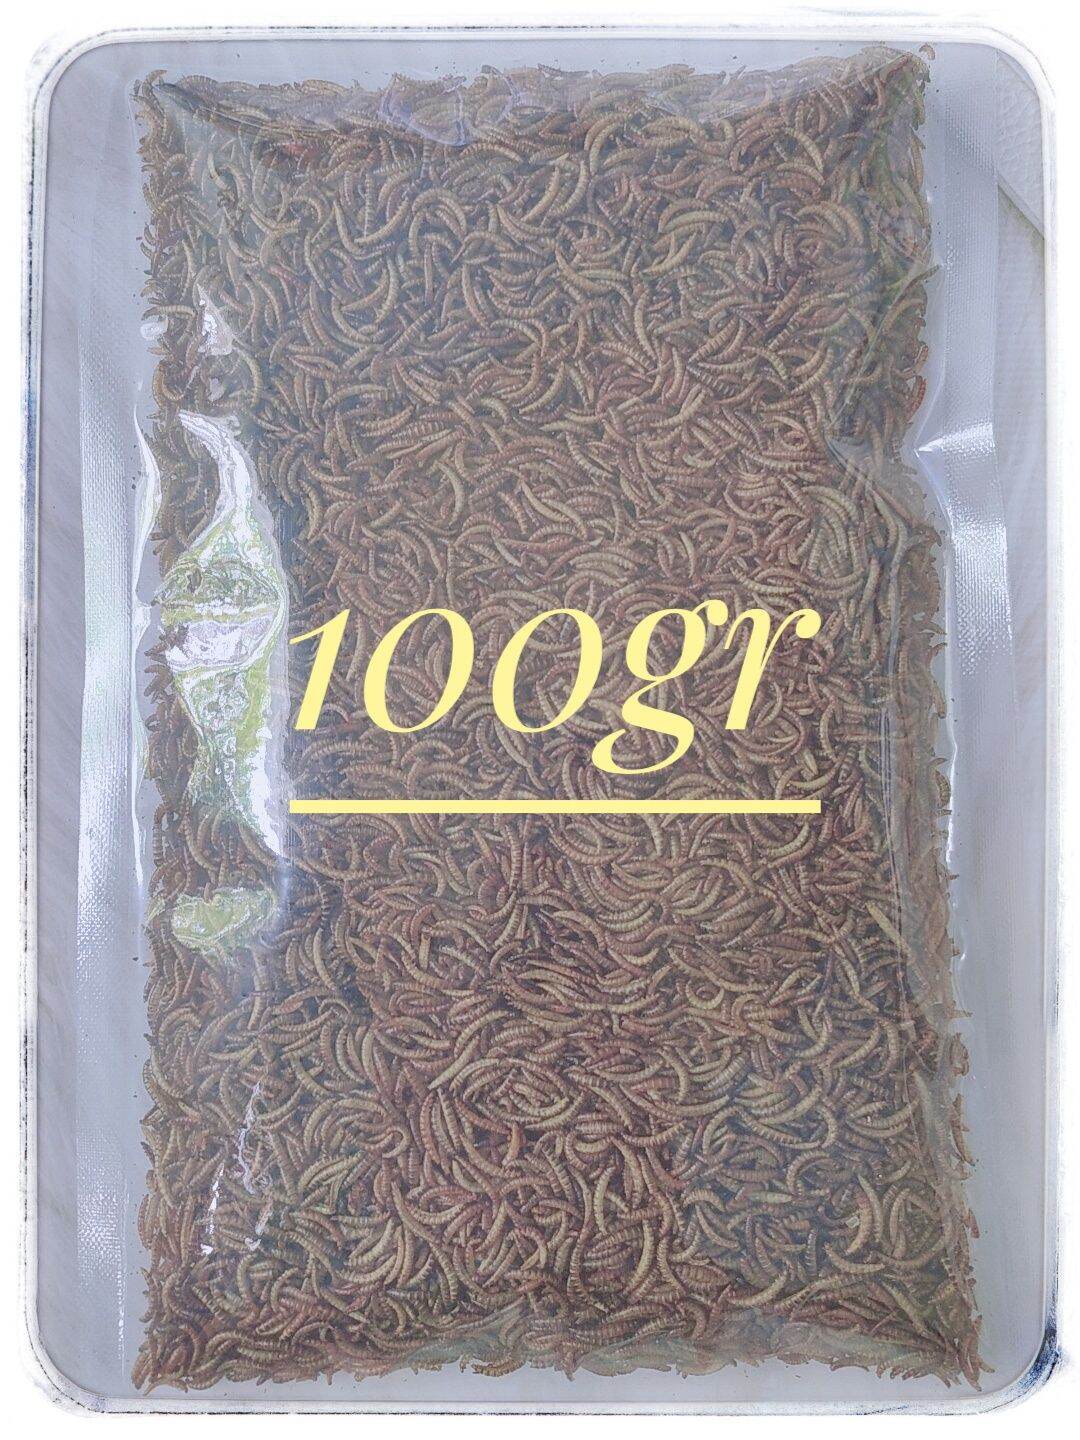 [HCM] 100GR- Sâu mini( nhỏ) sấy khô - thức ăn dành cho Hamster, sóc, chim, thú cưng